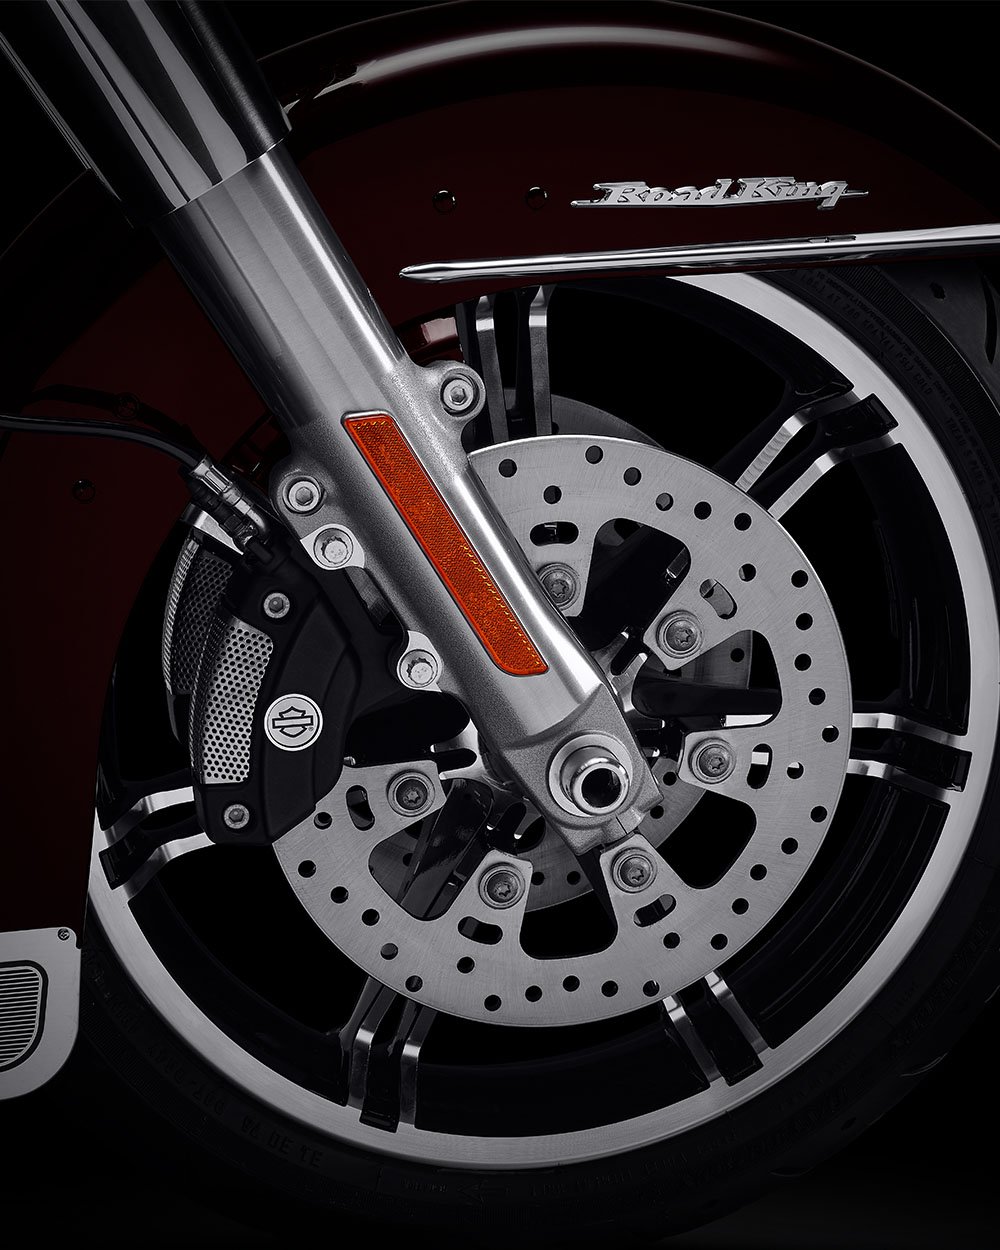 Połączone hamulce Reflex Brembo z opcjonalnym układem ABS w motocyklu 2022 Road King